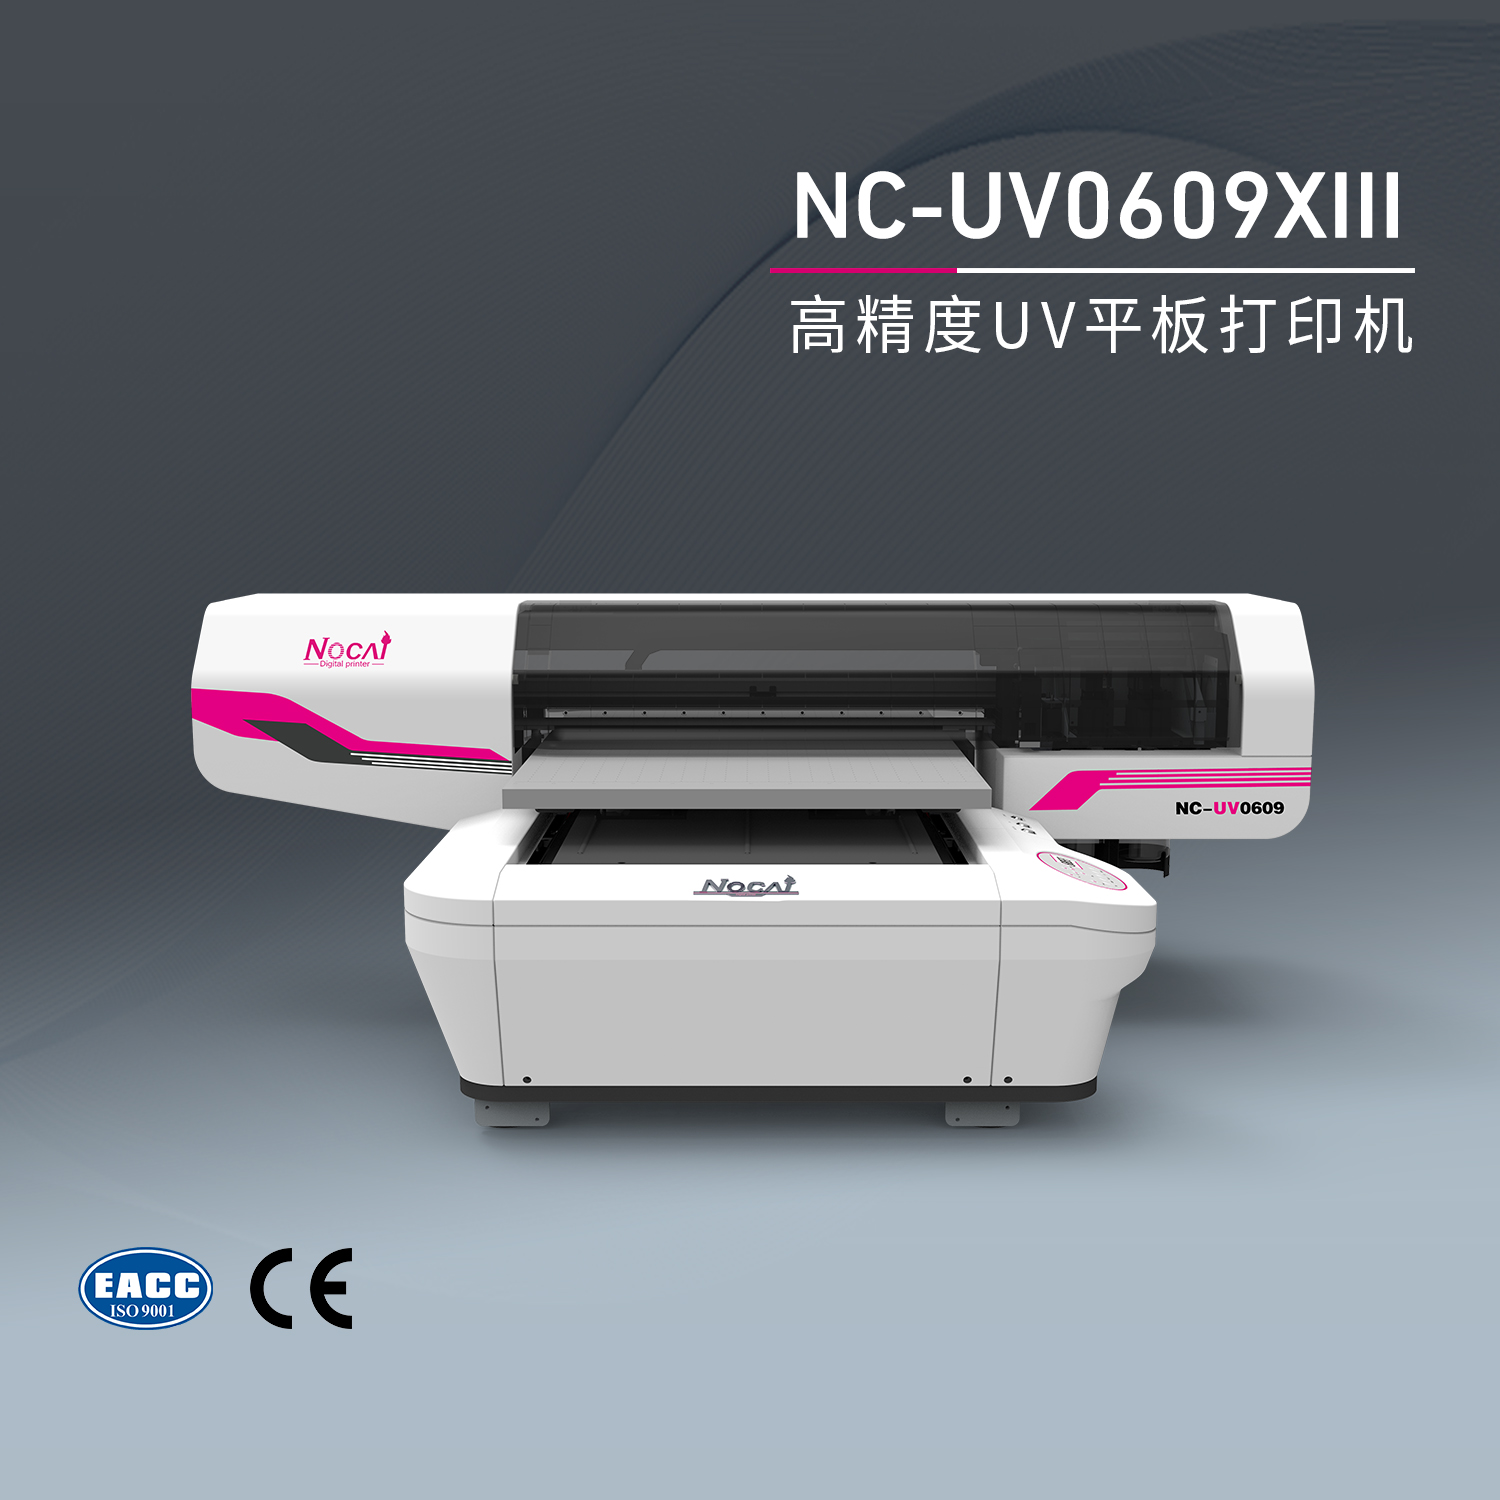 UV打印机进行吸墨时需要注意的事项